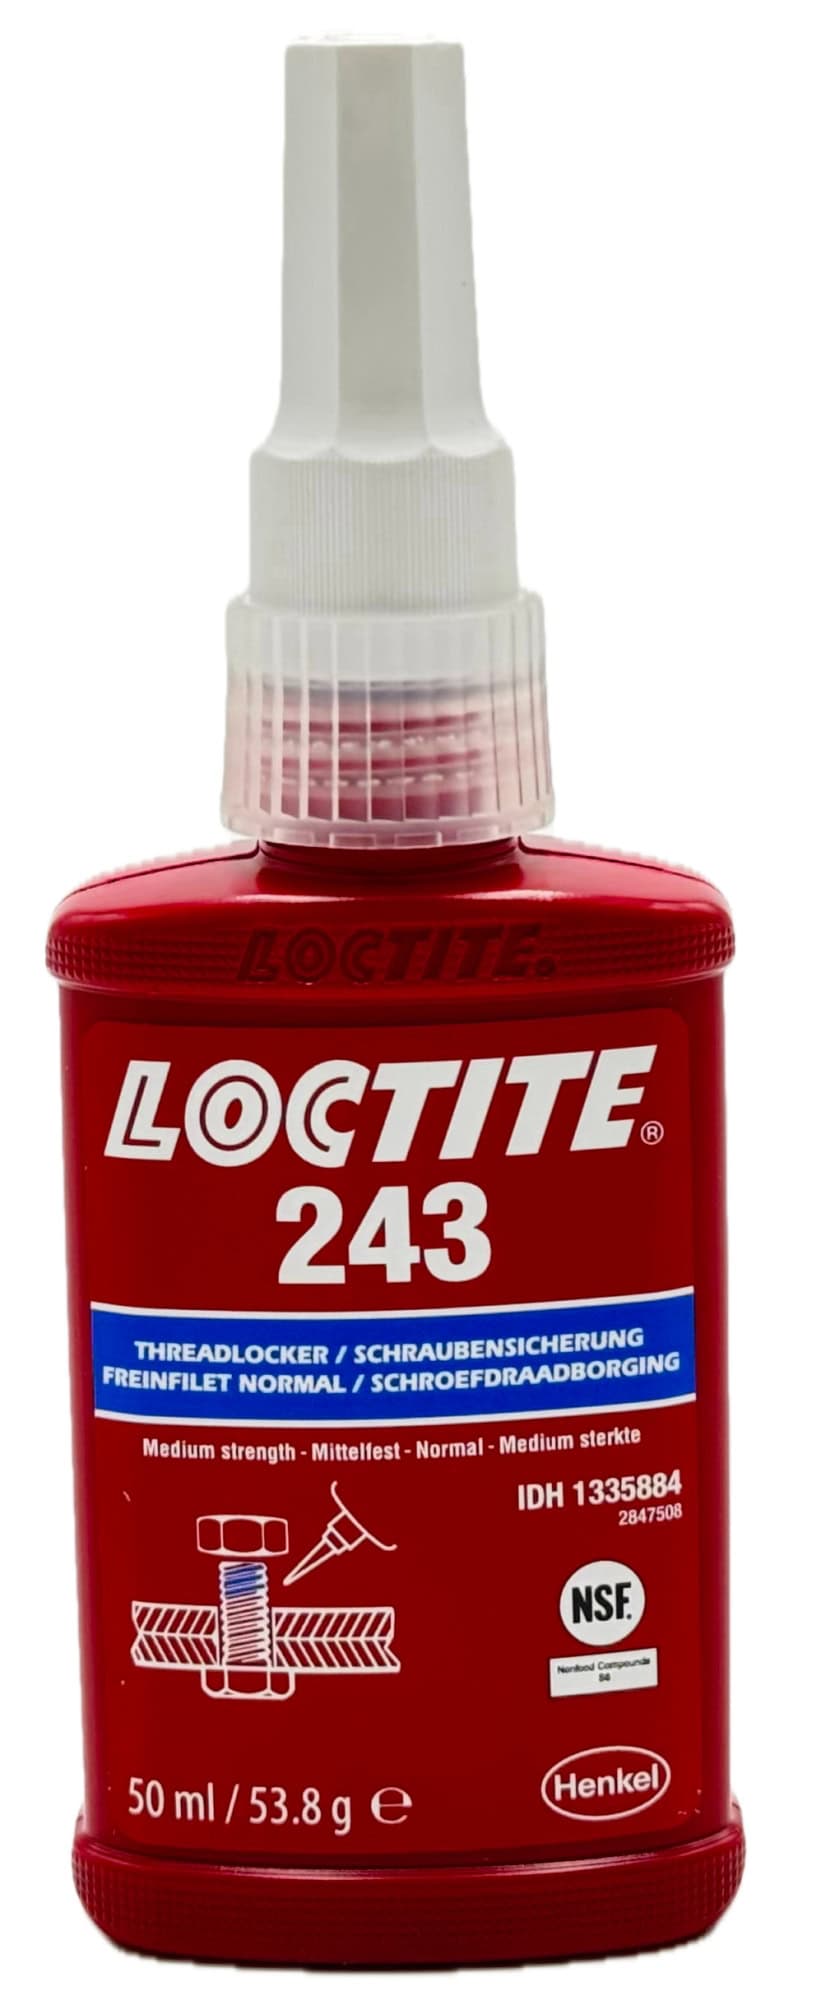 Henkel™ Loctite® Schraubensicherung 243, 50 ml, Blau, 1335884, Universell einsetzbar